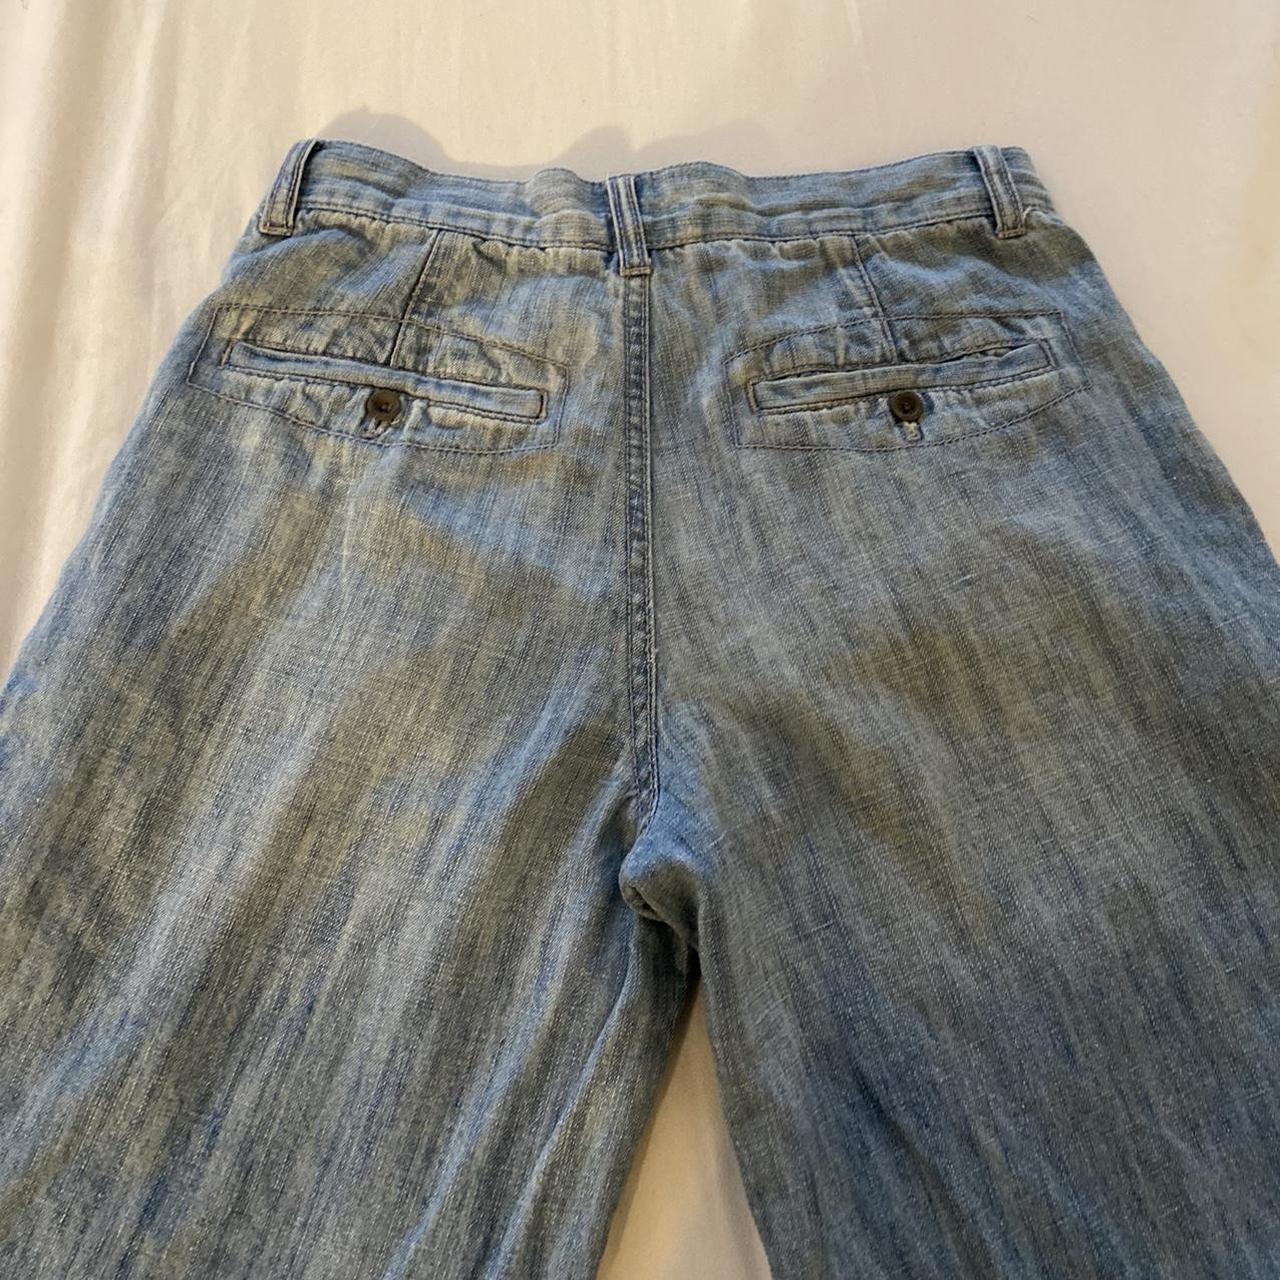 Juicy Couture wide leg jeans - Depop